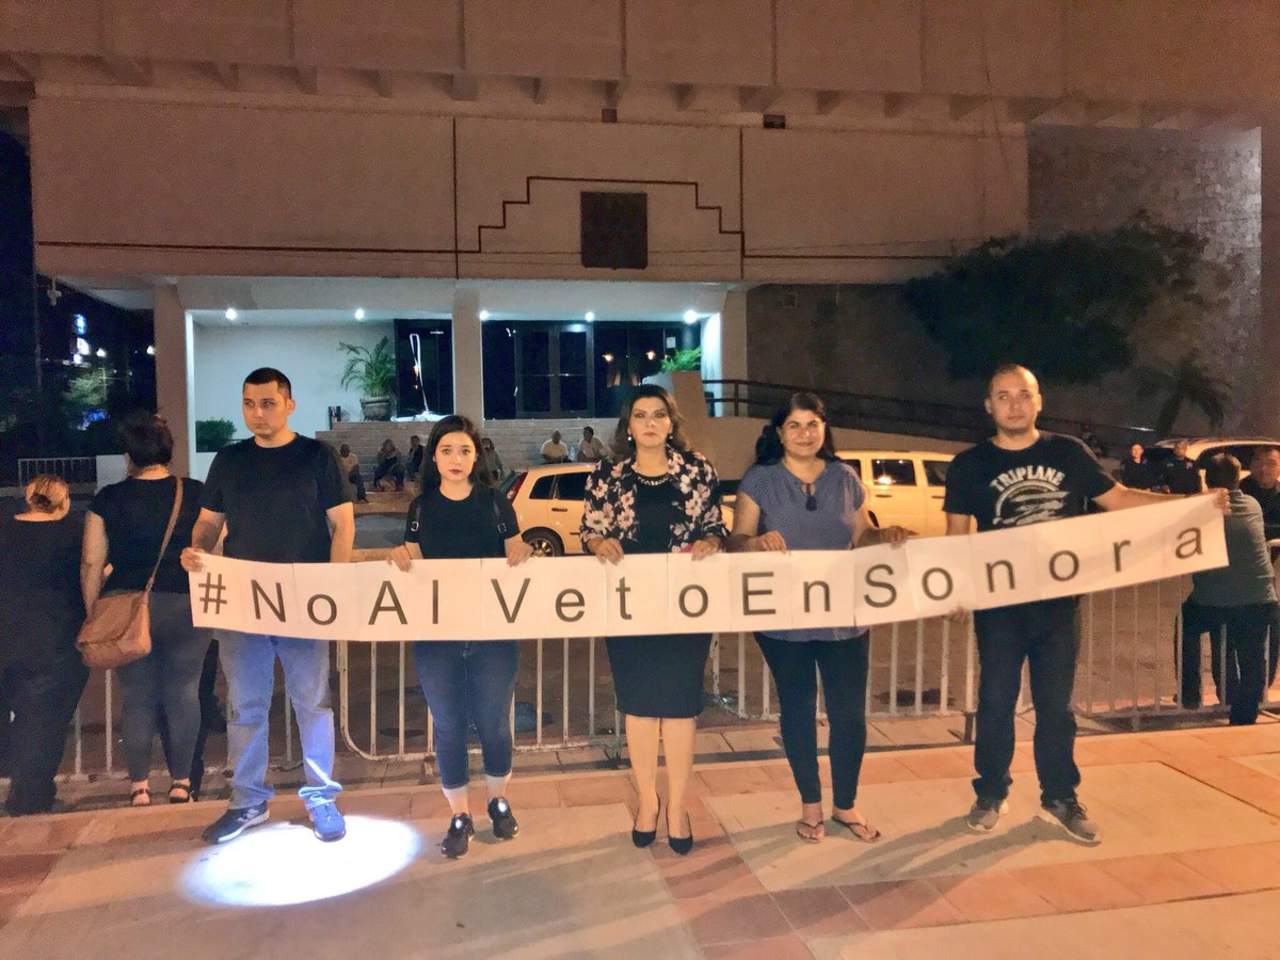 Alistan albazo de figura al veto en Sonora; morenistas protestan. Noticias en tiempo real